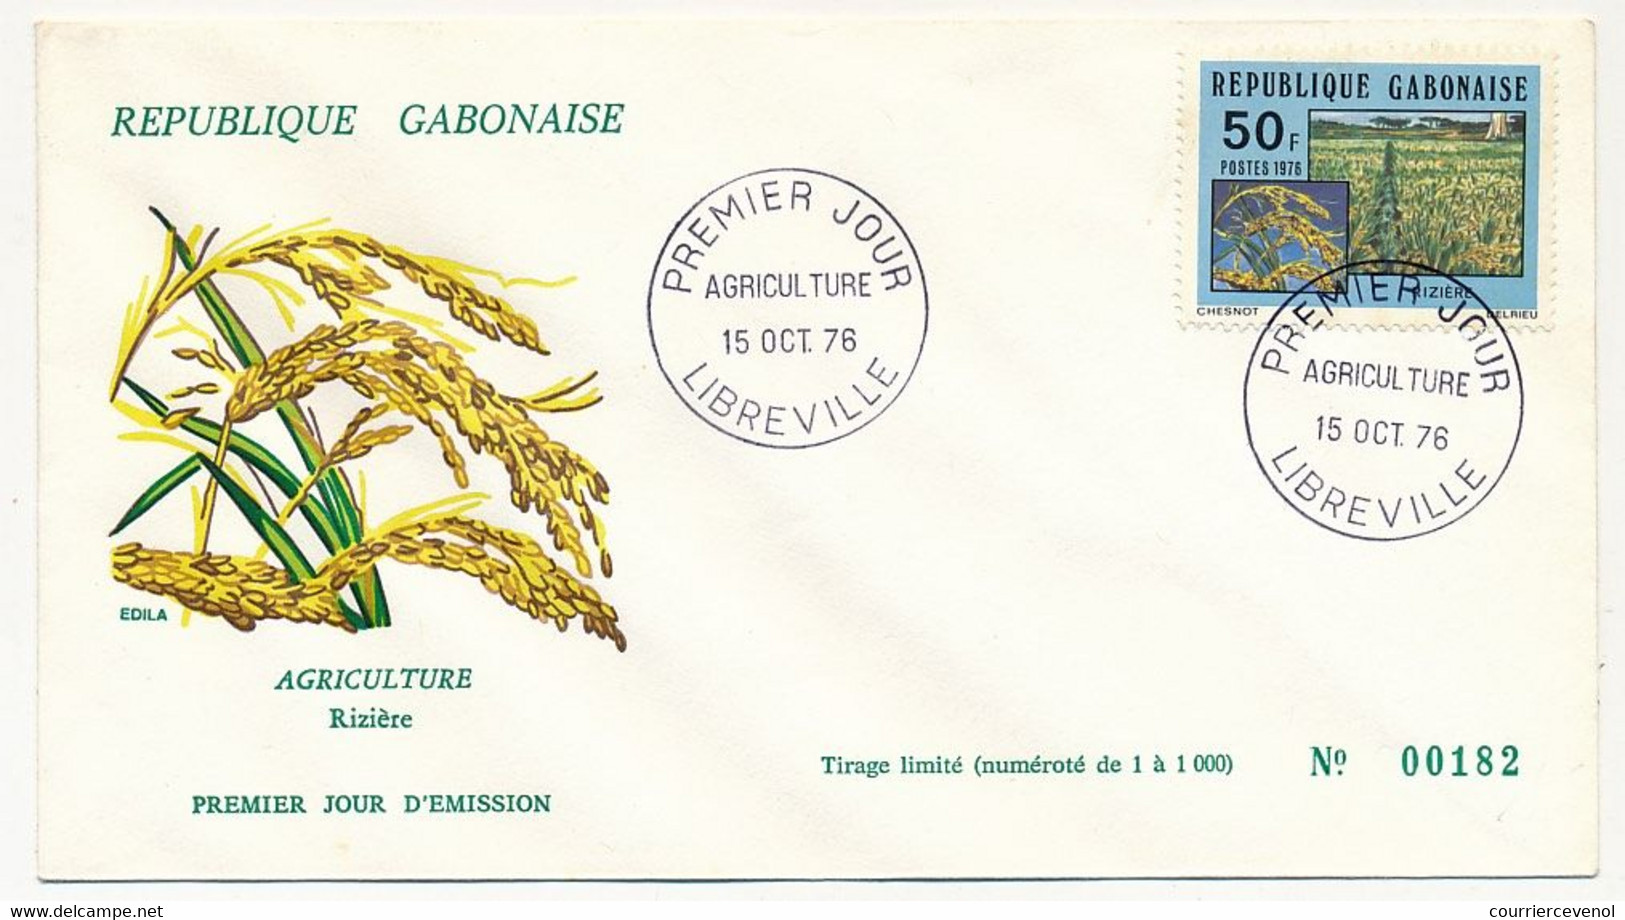 GABON => 2 Env FDC => 50F Et 60F Agriculture - 15 Octobre 1976 - Libreville - Gabon